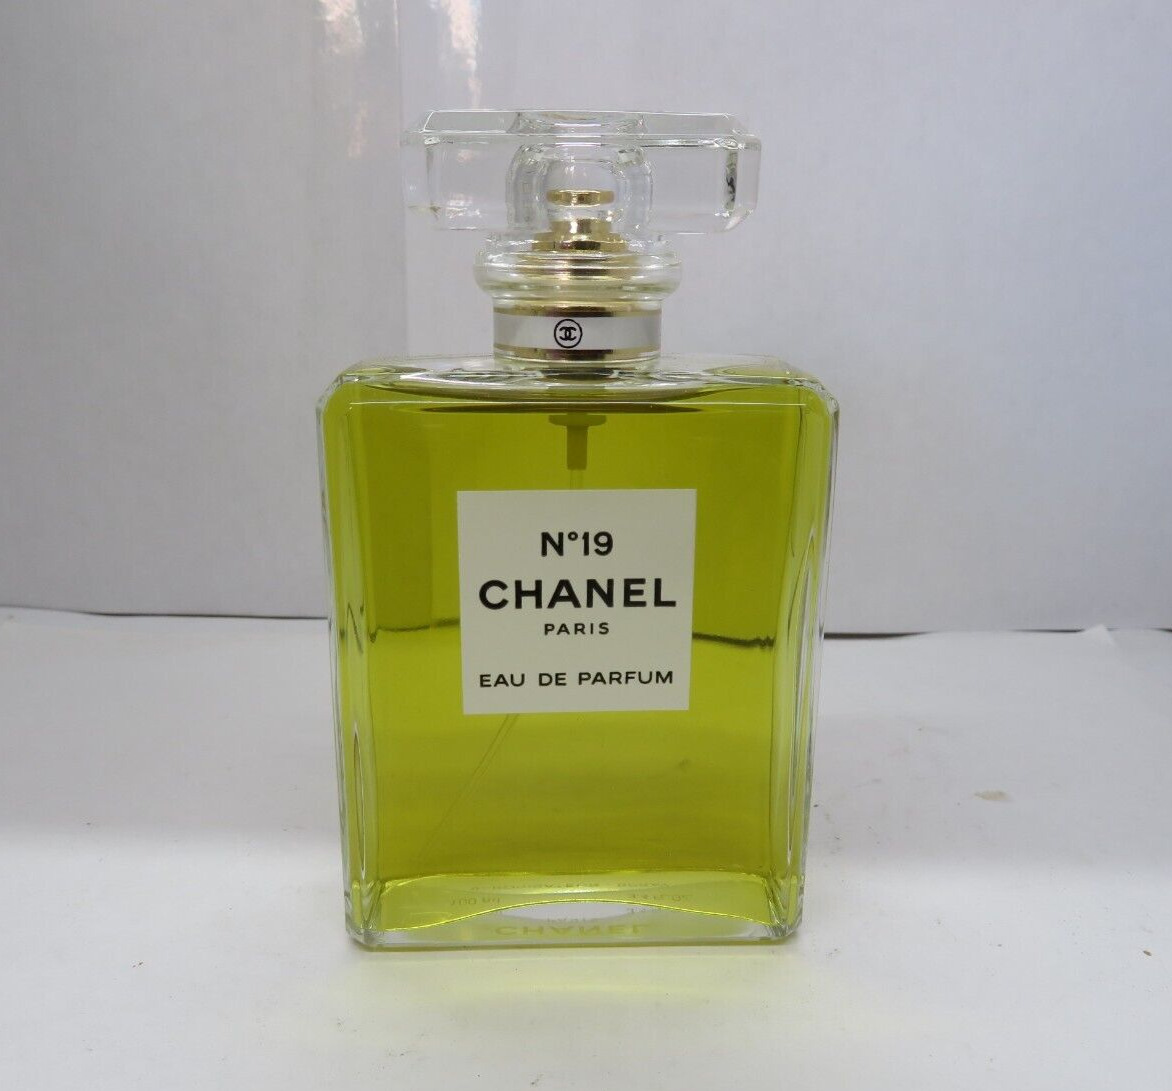 Chanel №19 Poudre - Eau de Parfum